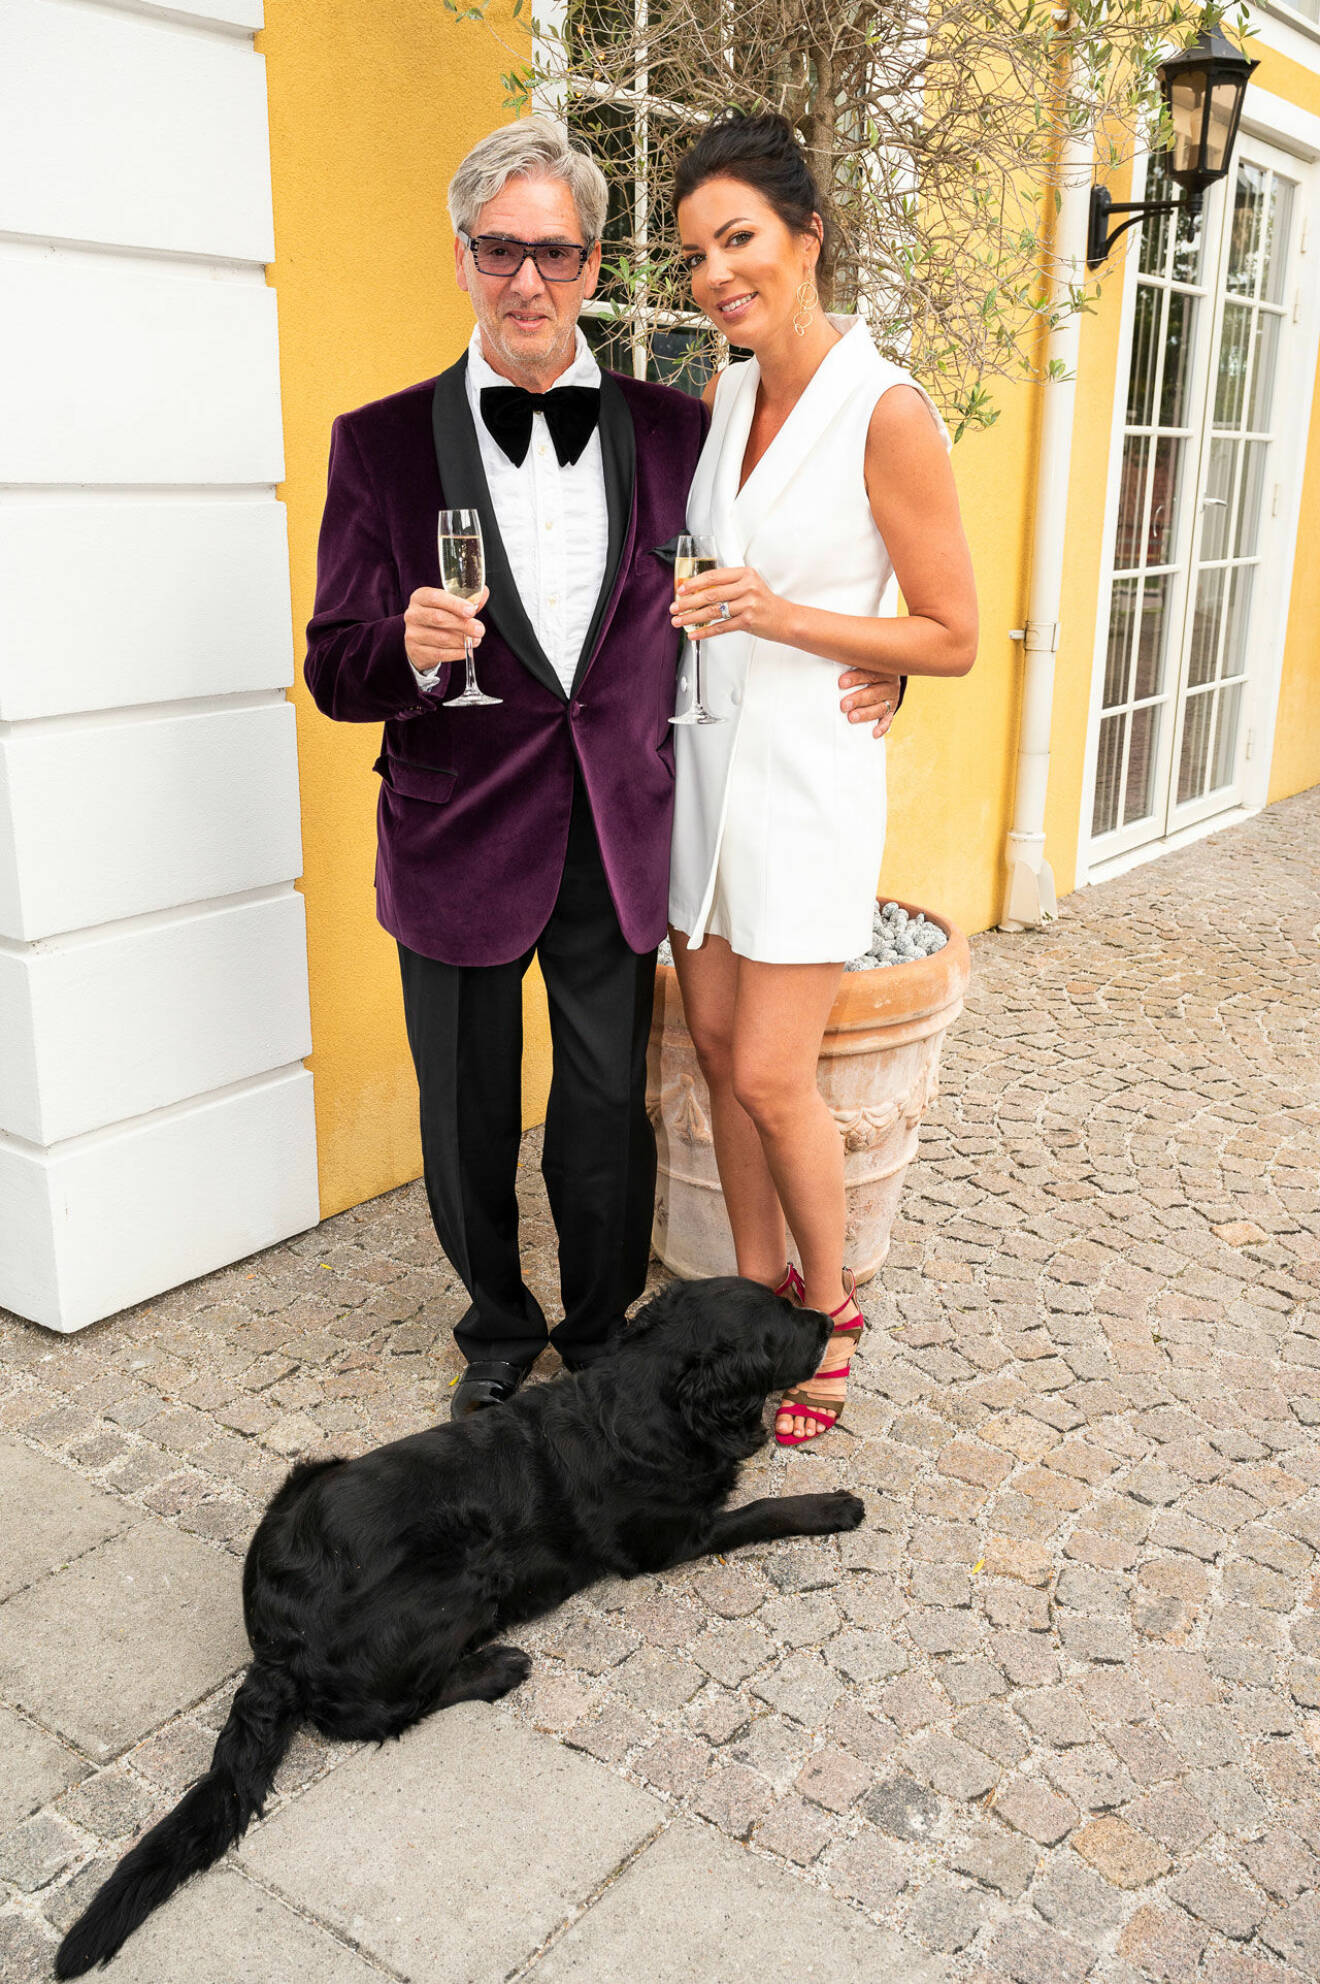 Kvällens värdpar! Slottsägaren Anders Jarlskog och makan Sanna, samt hunden Alice.